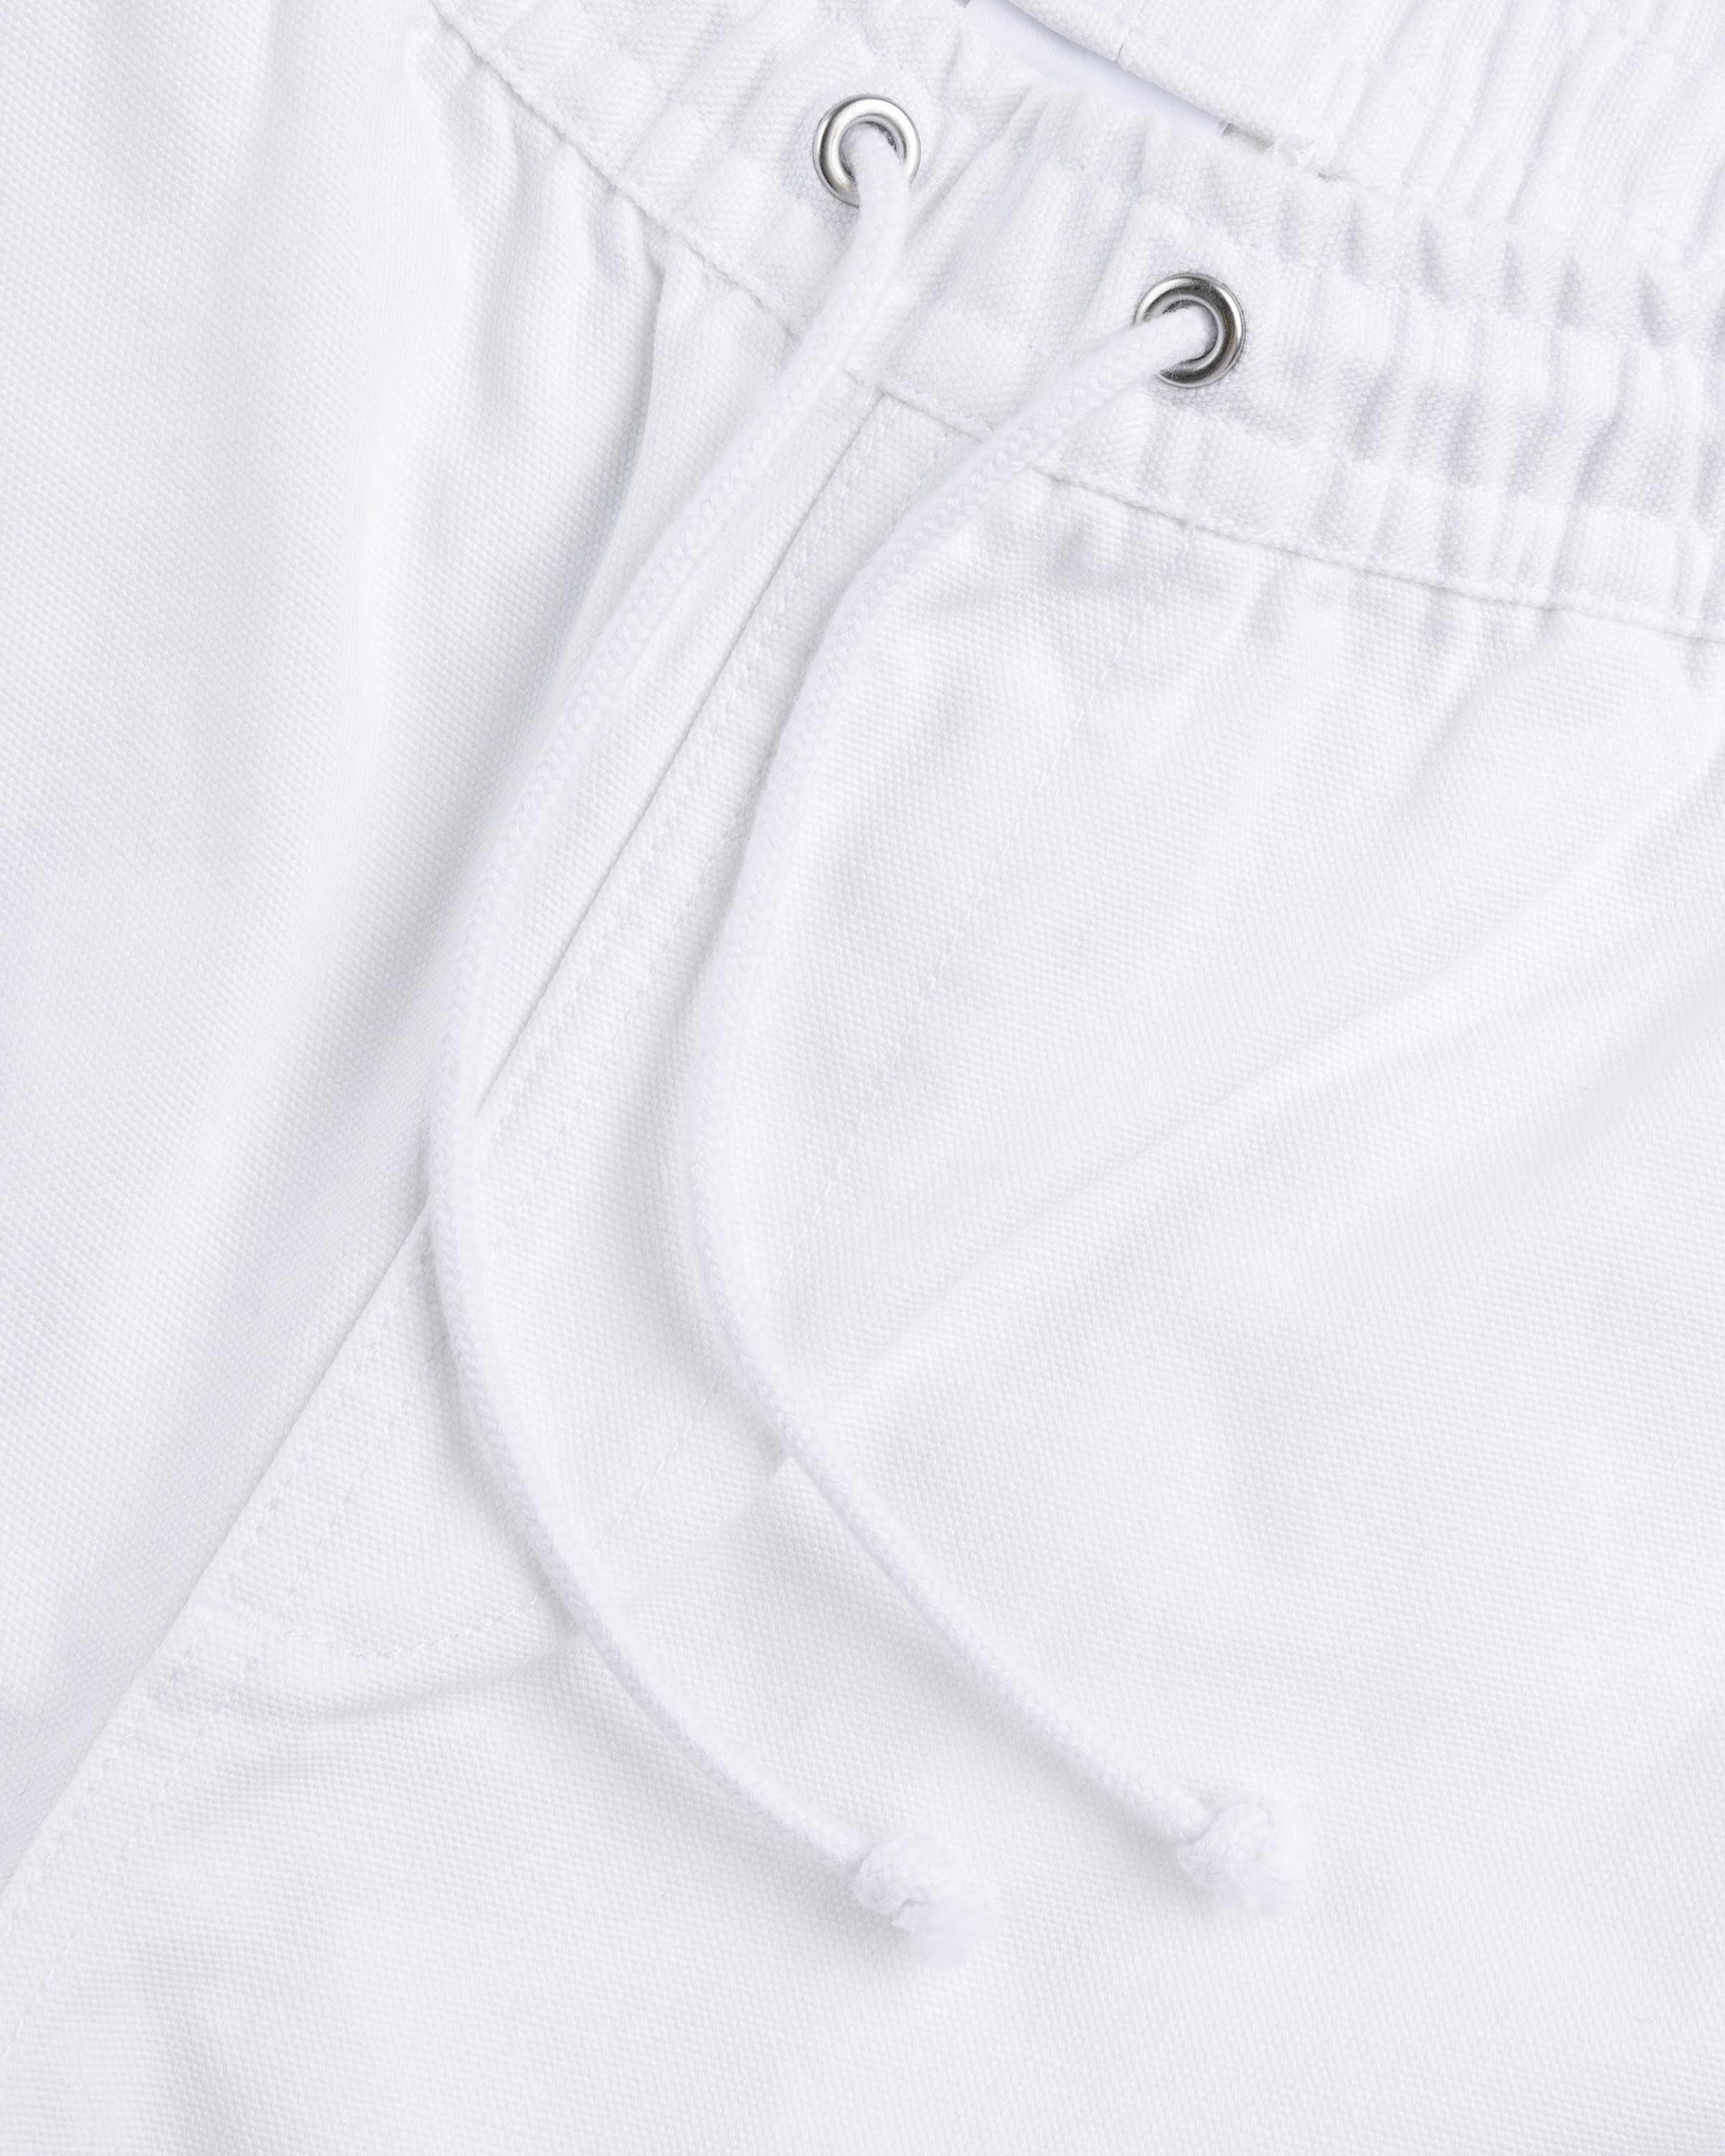 Puma - NOAH Shorts - Clothing - White - Image 5